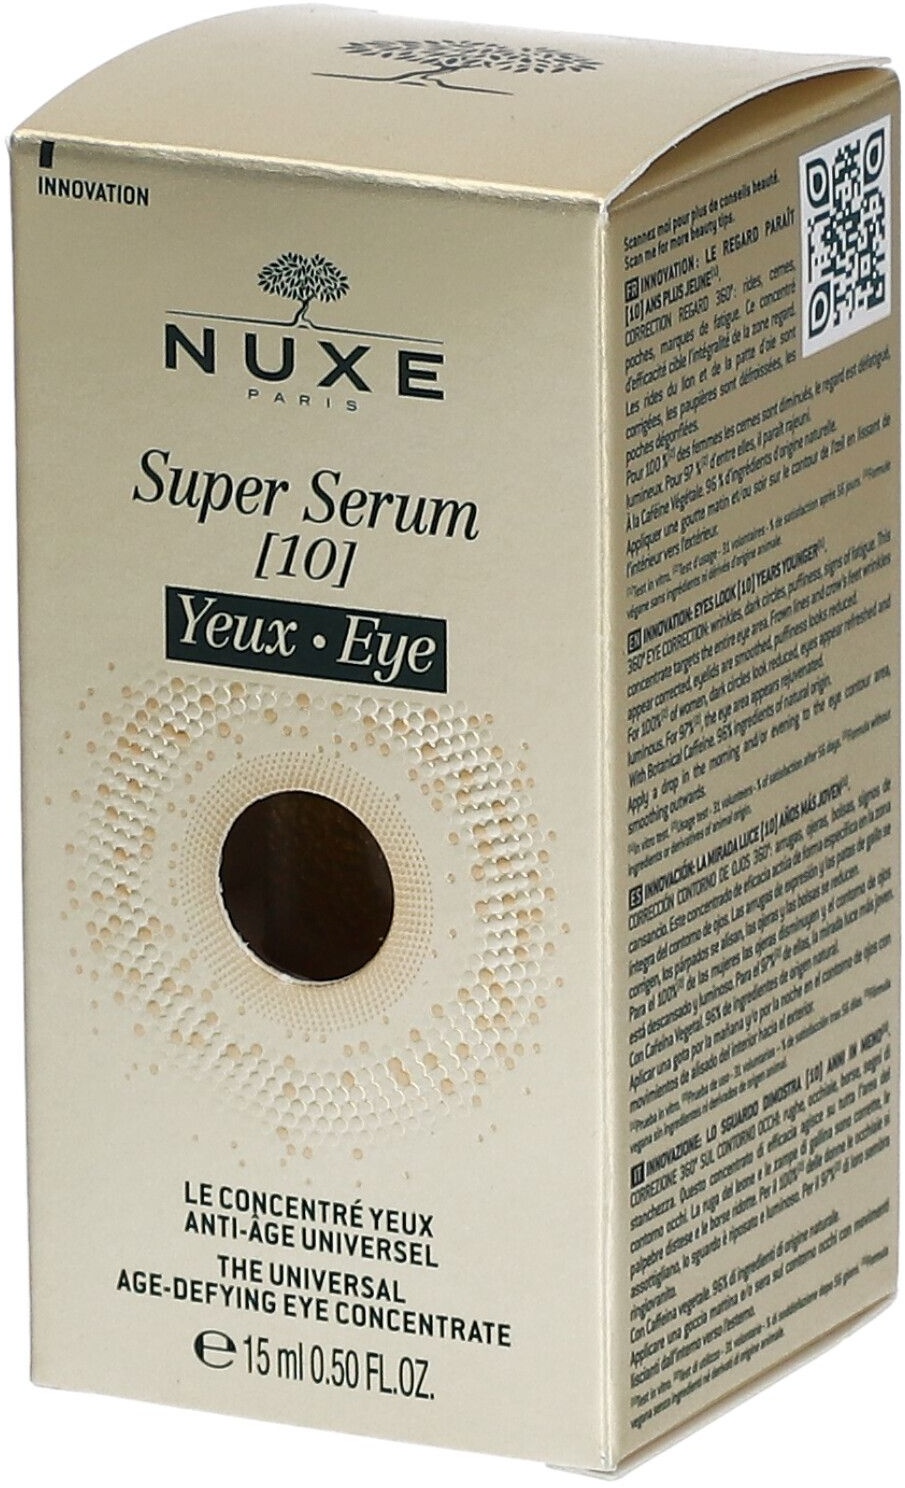 NUXE Super Serum [10] Yeux - Le concentré yeux anti-âge universel 15 ml crème ophtalmique